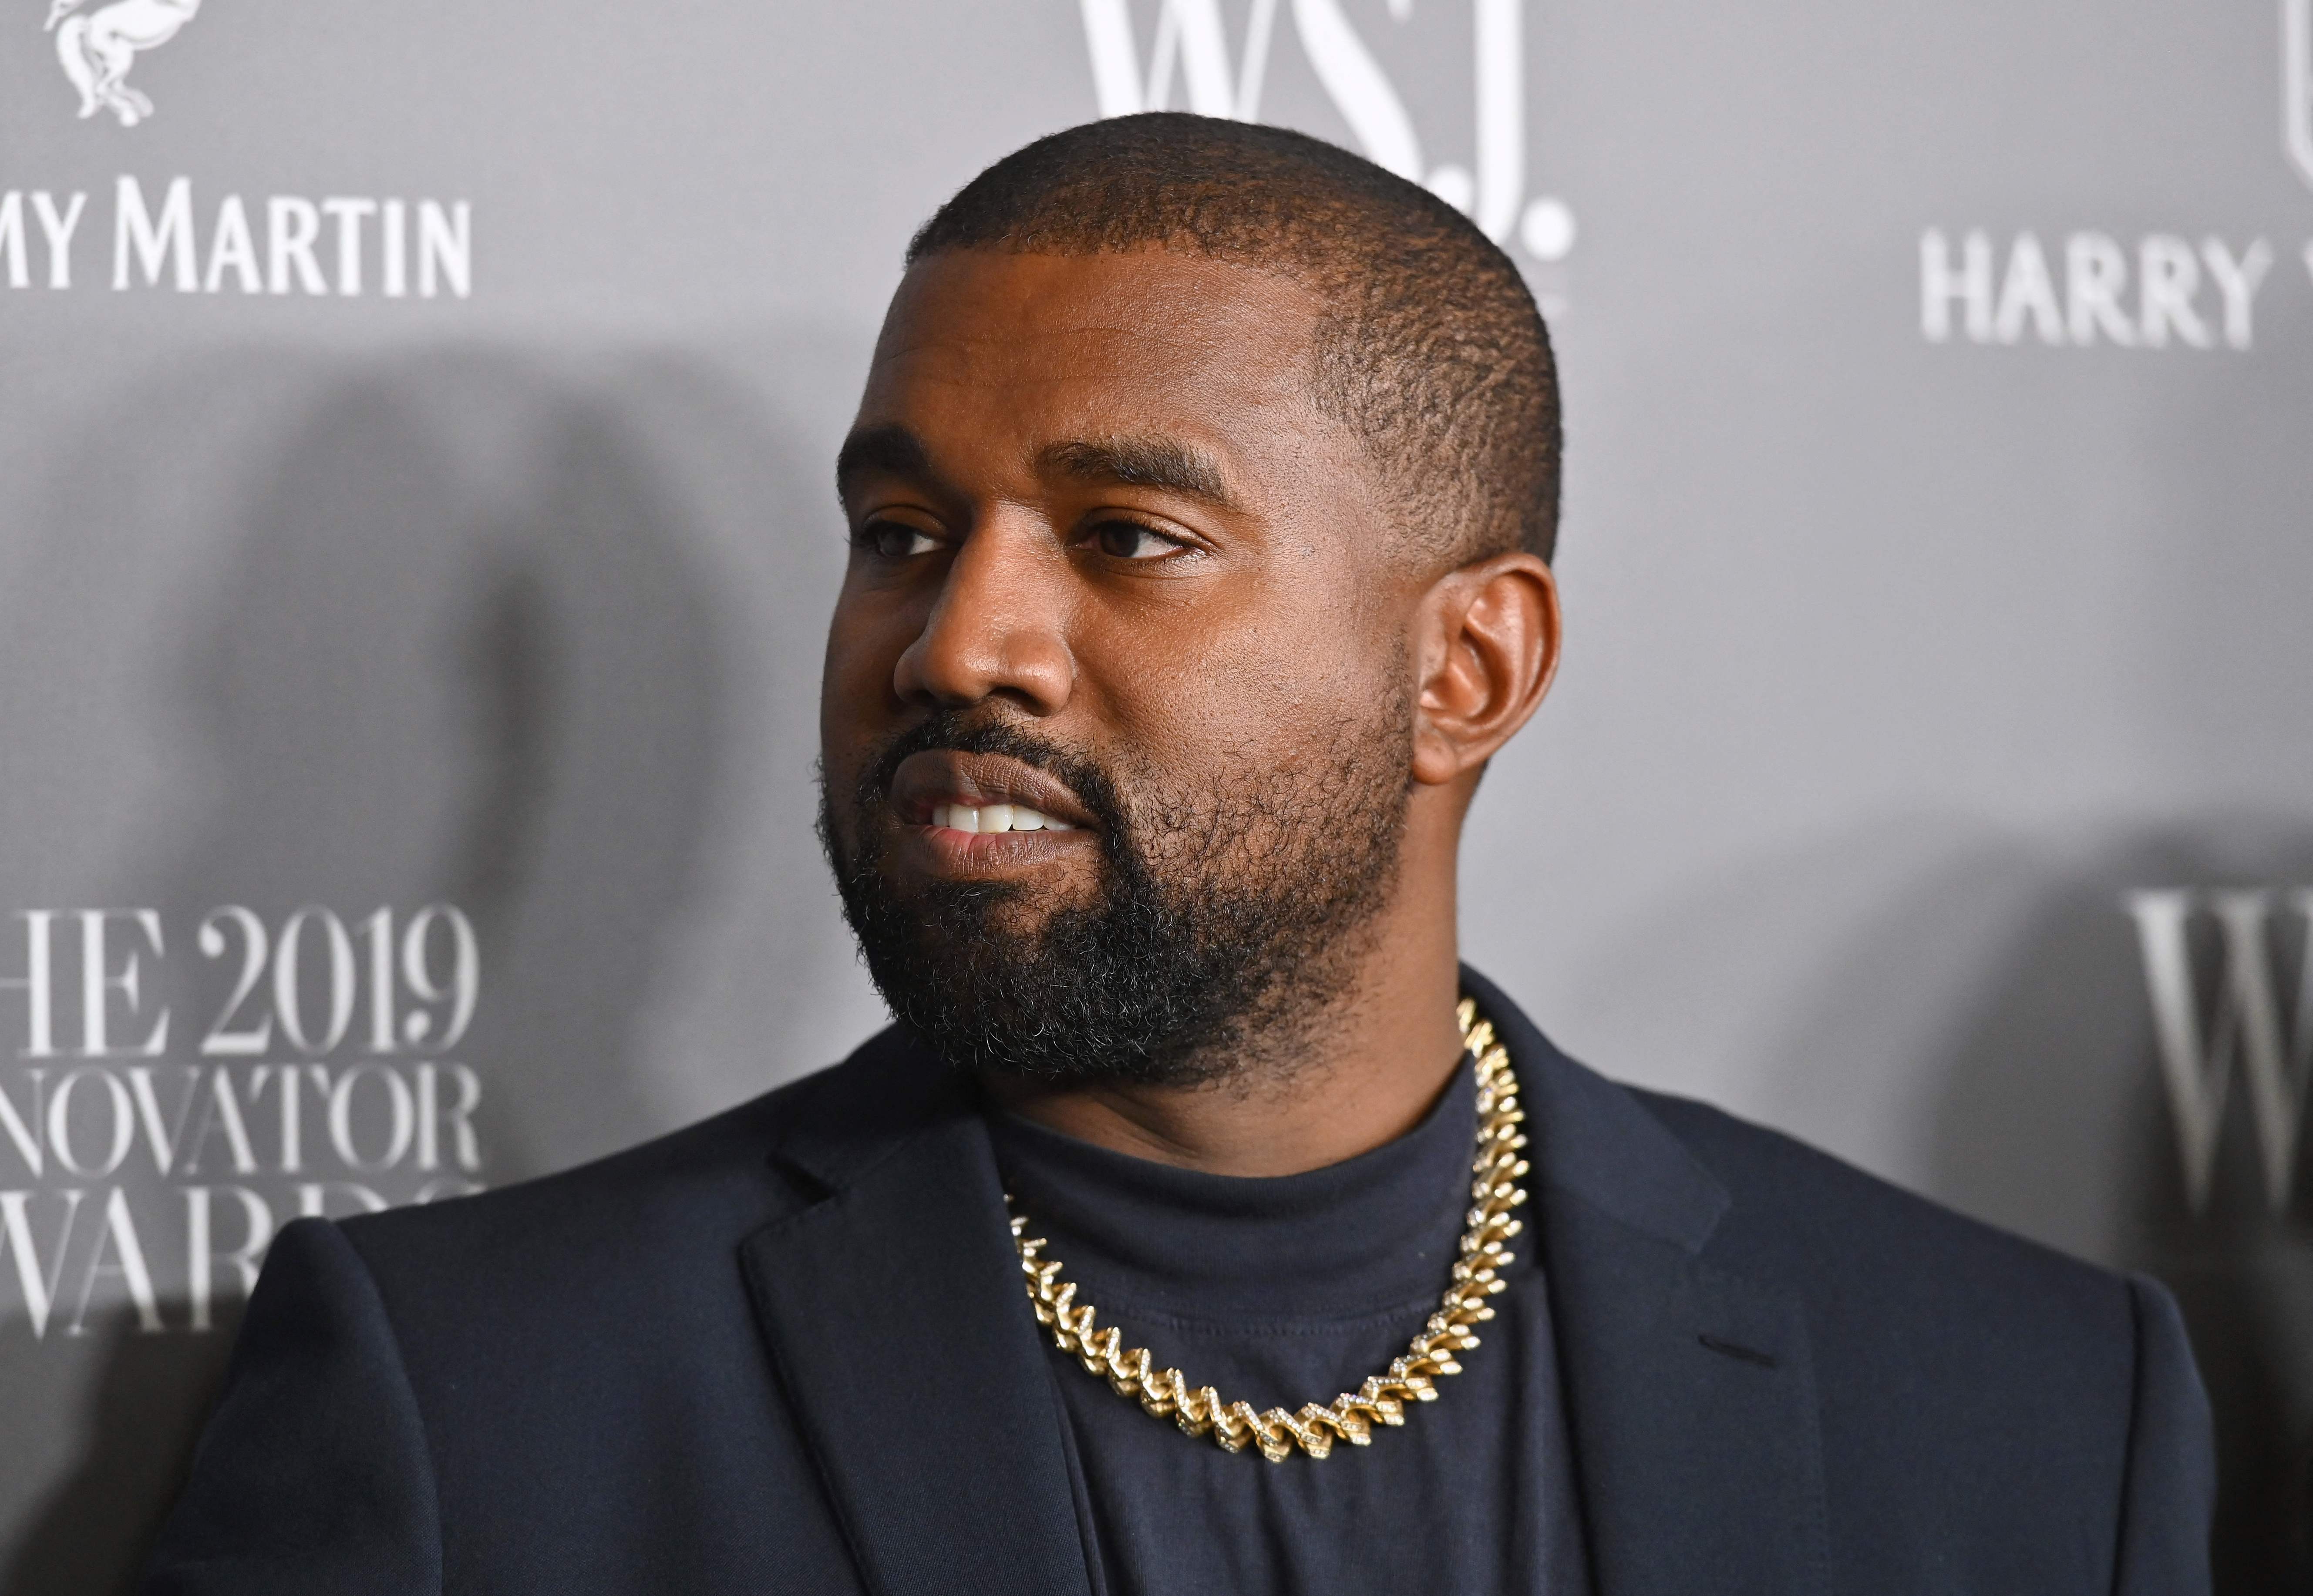 X reintegró al rapero y diseñador Kanye West, informó el Wall Street Journal el 29 de julio de 2023. (Foto Prensa Libre: Angela Weiss / AFP)